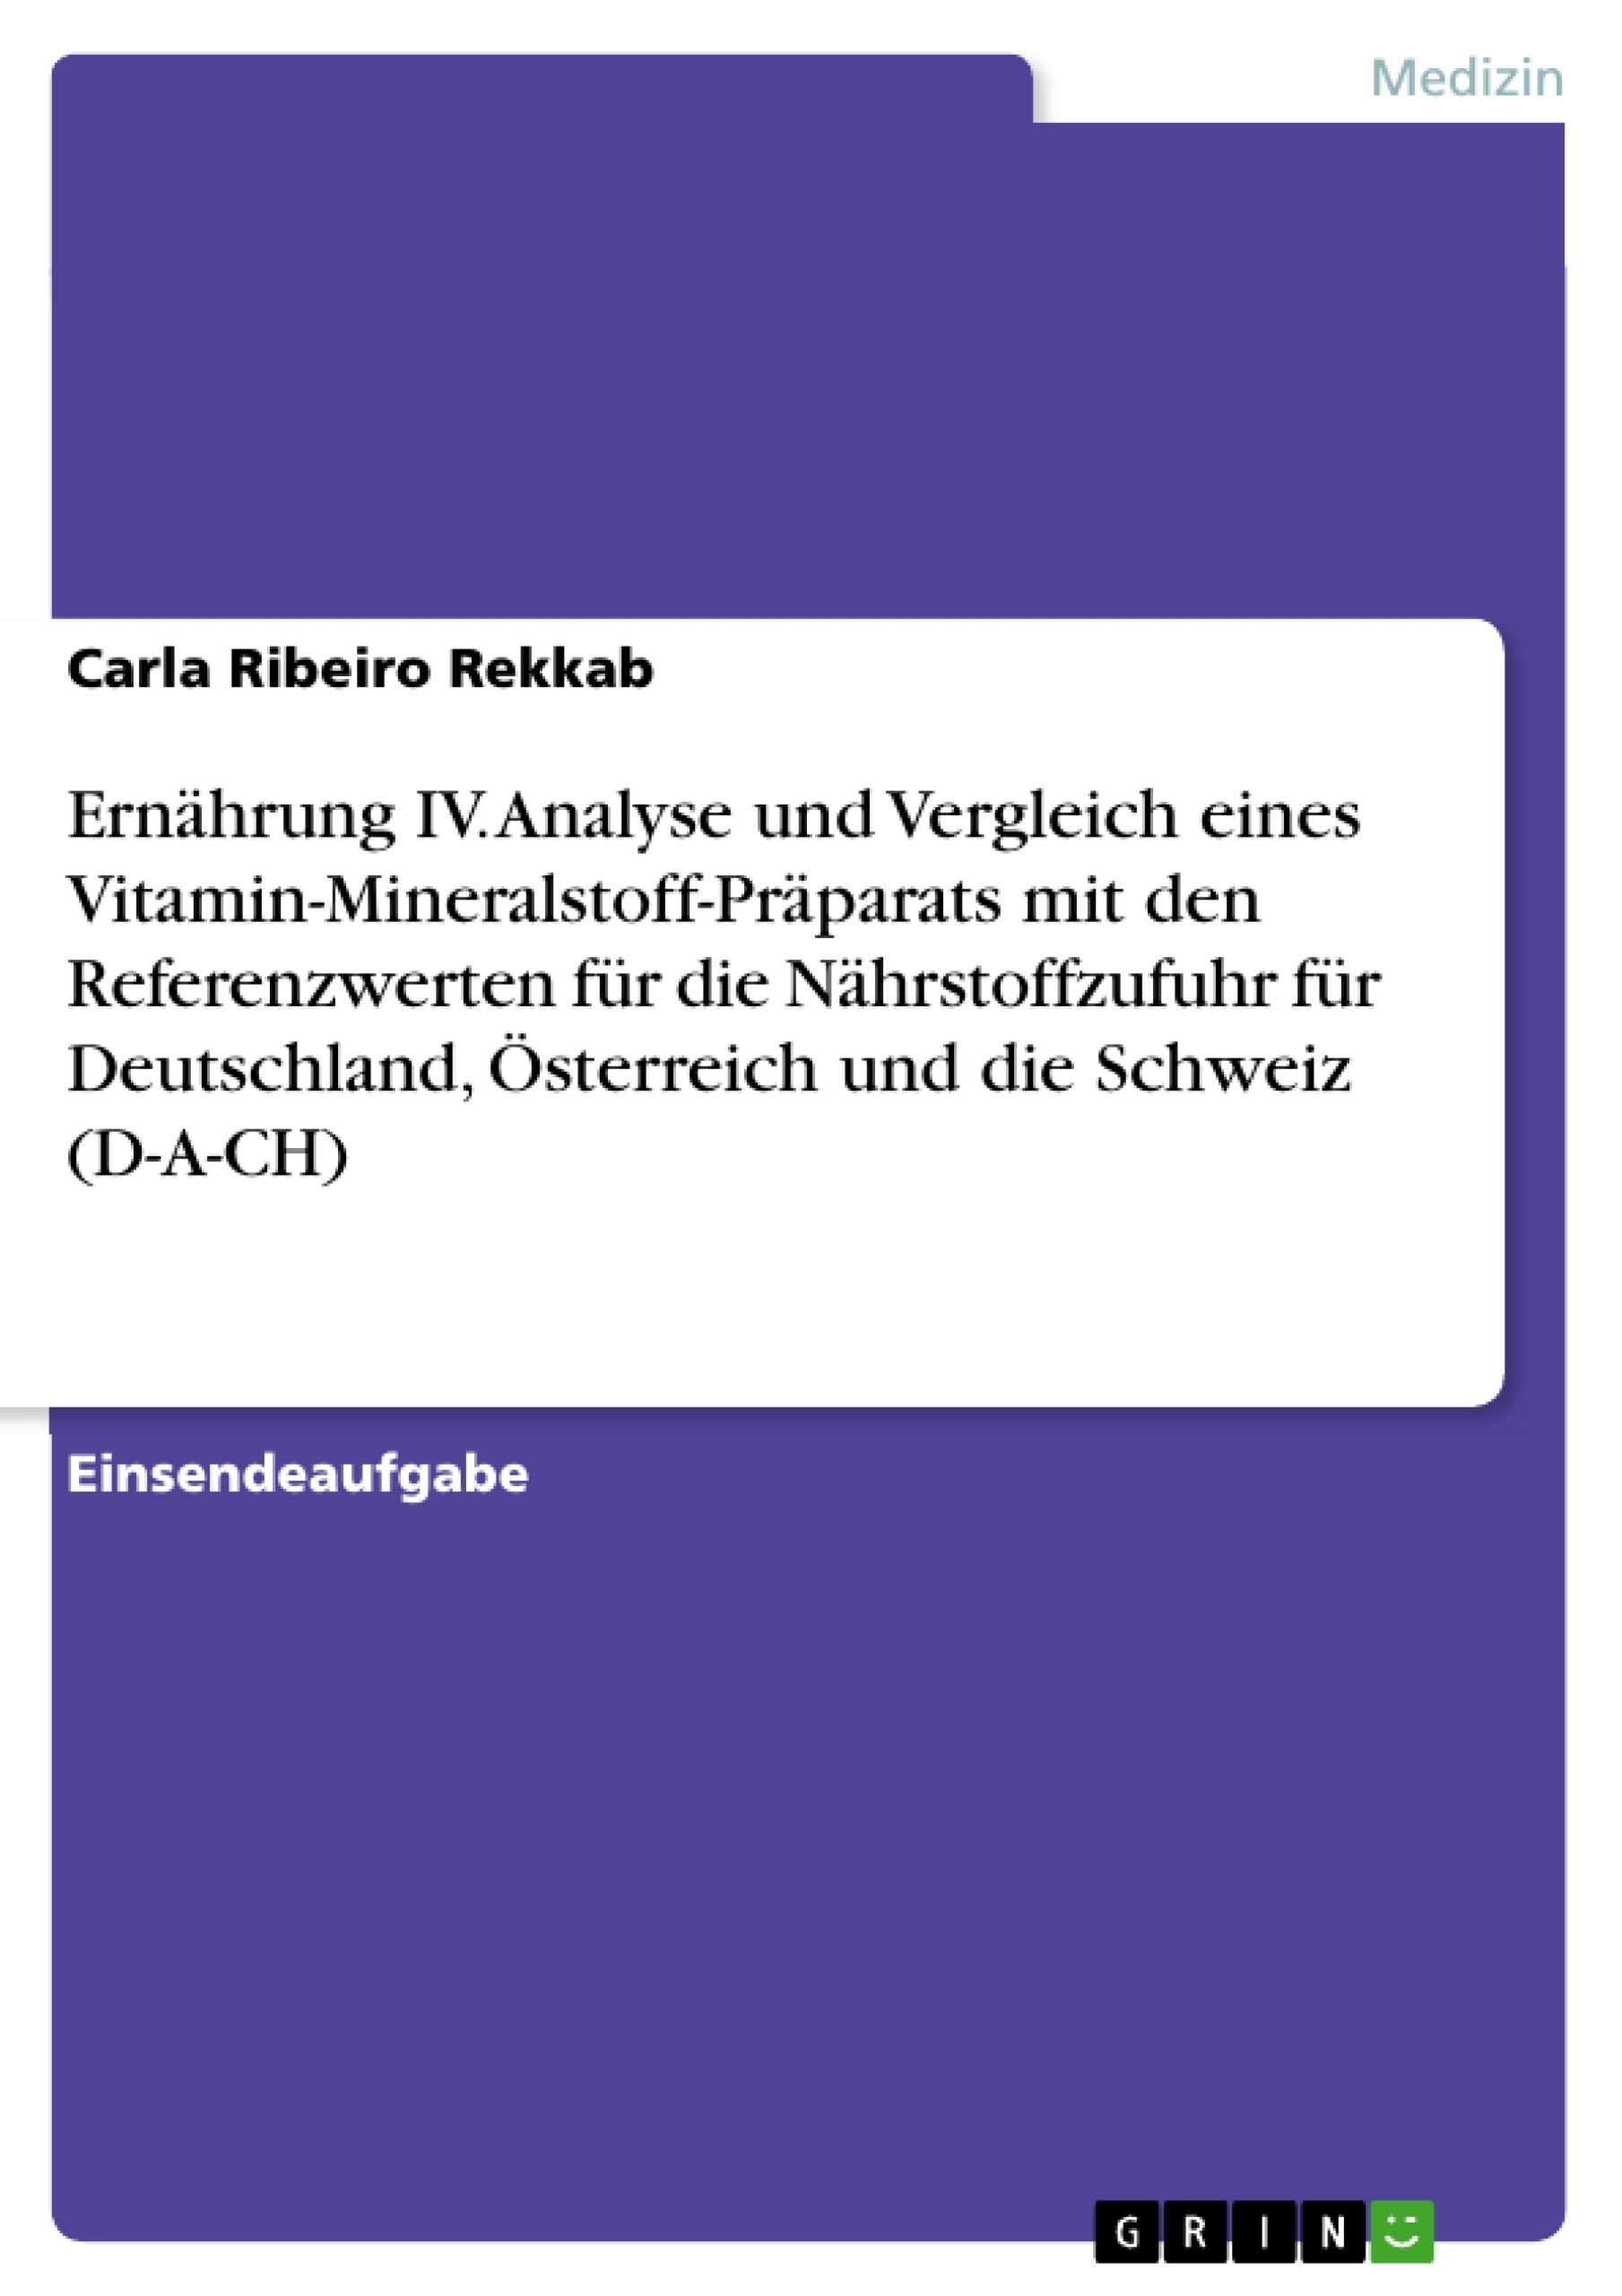 Titre: Ernährung IV. Analyse und Vergleich eines Vitamin-Mineralstoff-Präparats mit den Referenzwerten für die Nährstoffzufuhr für Deutschland, Österreich und die Schweiz (D-A-CH)